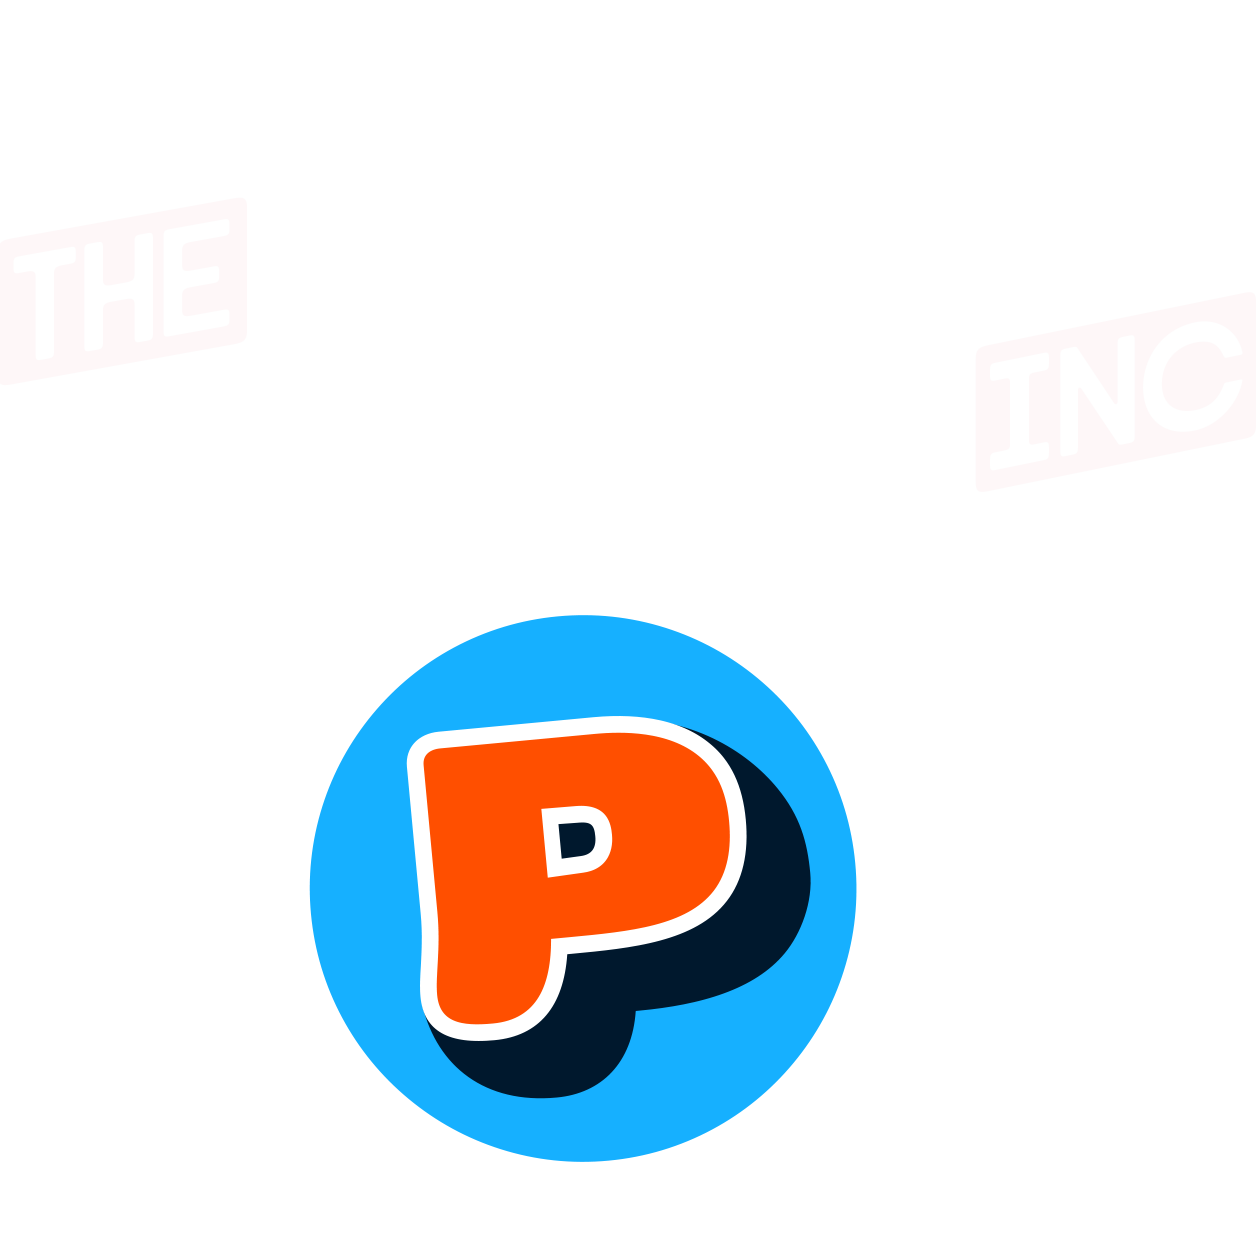 Tipos Pereira Inc